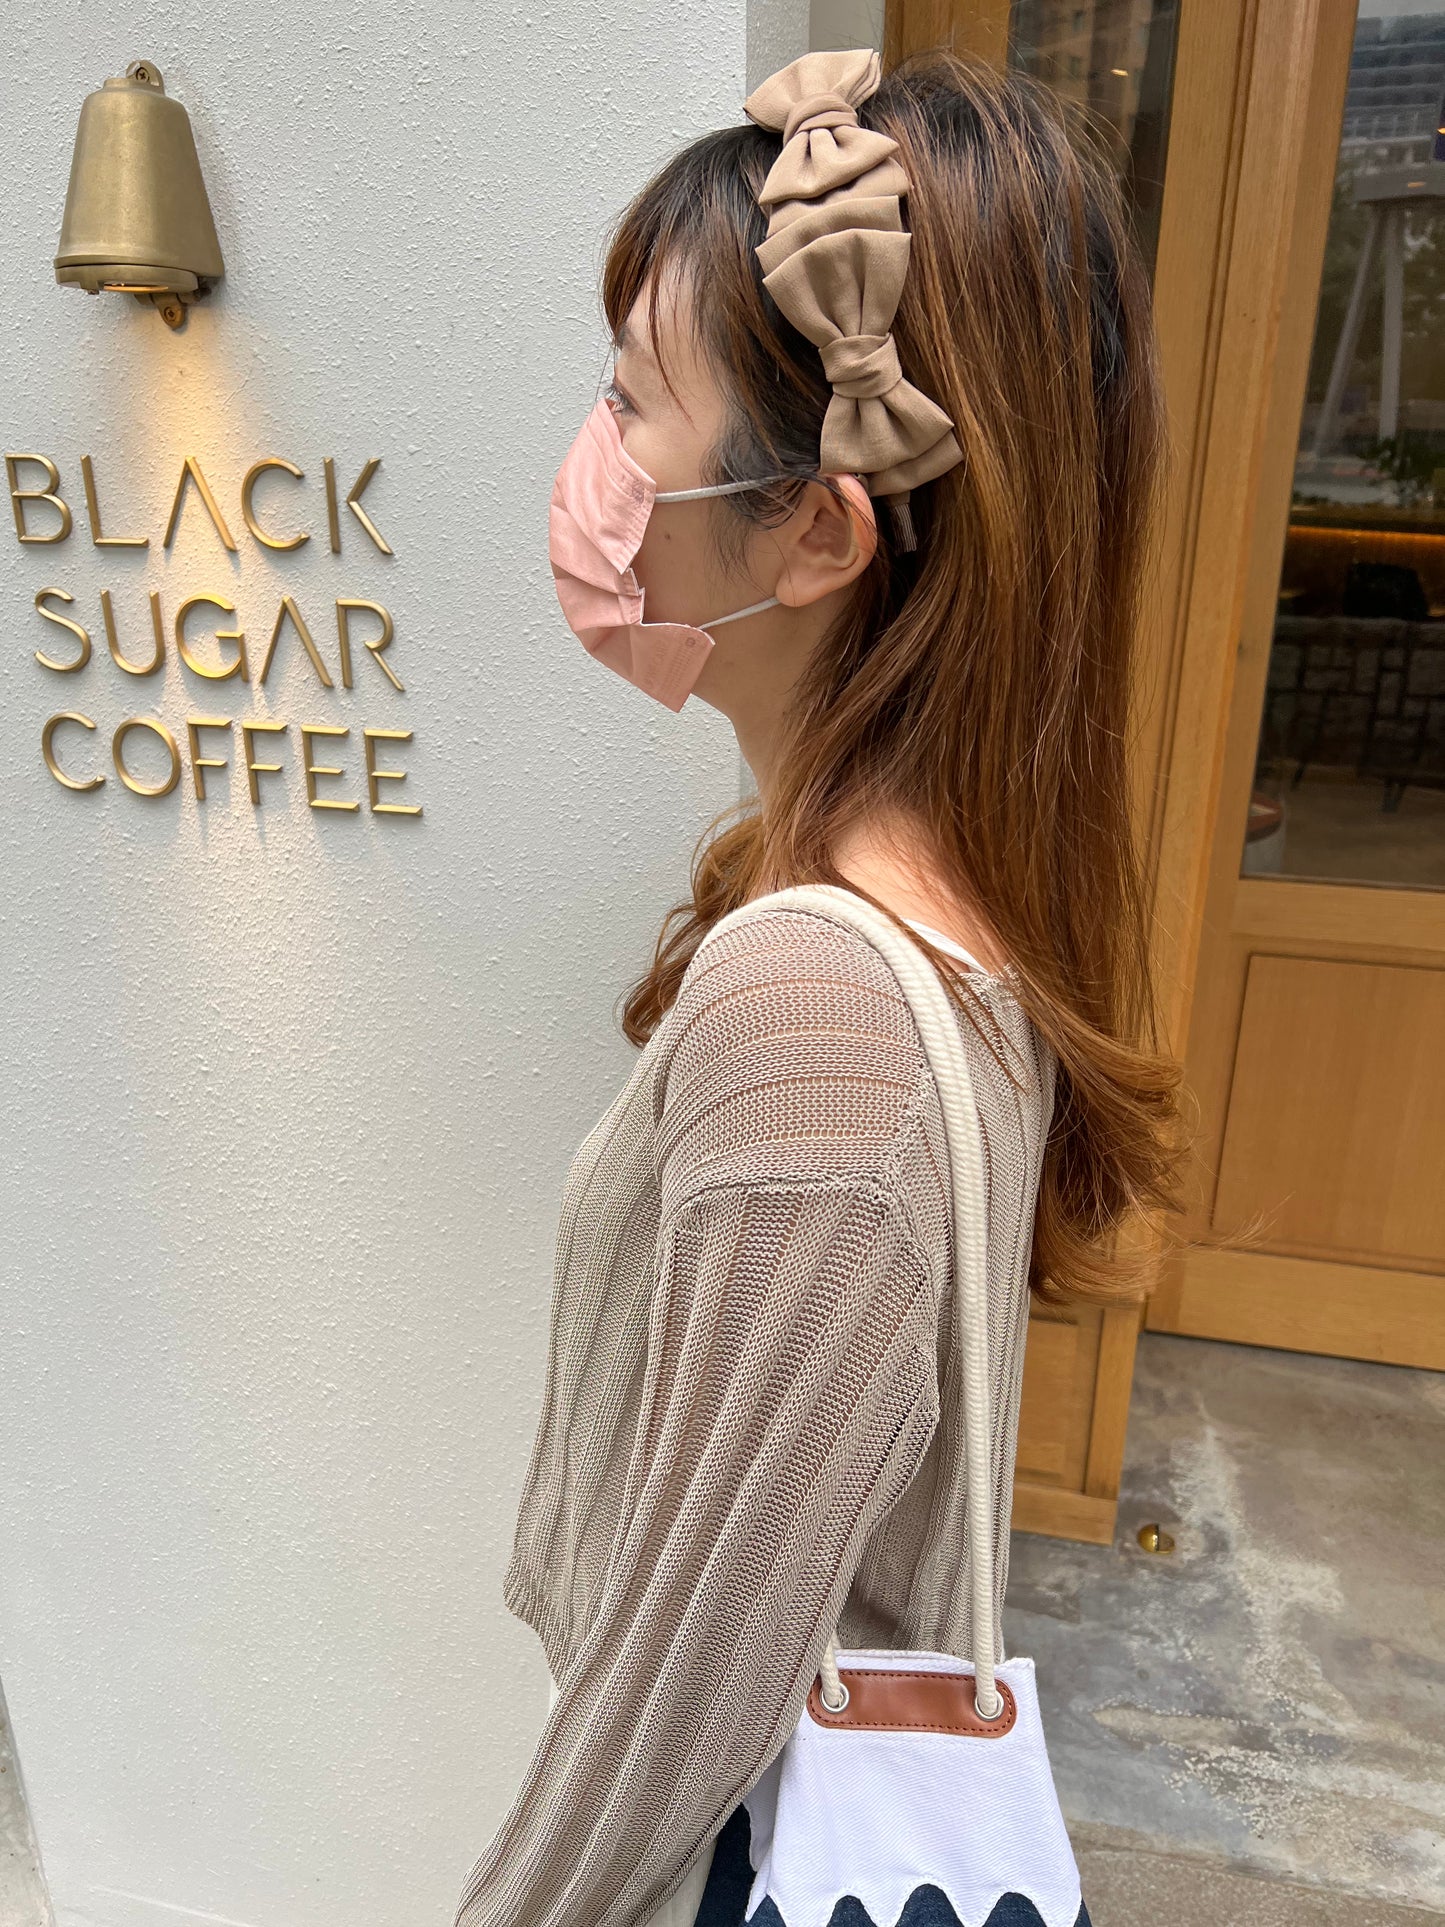 🧋韓國立體奶茶蝴蝶結頭箍